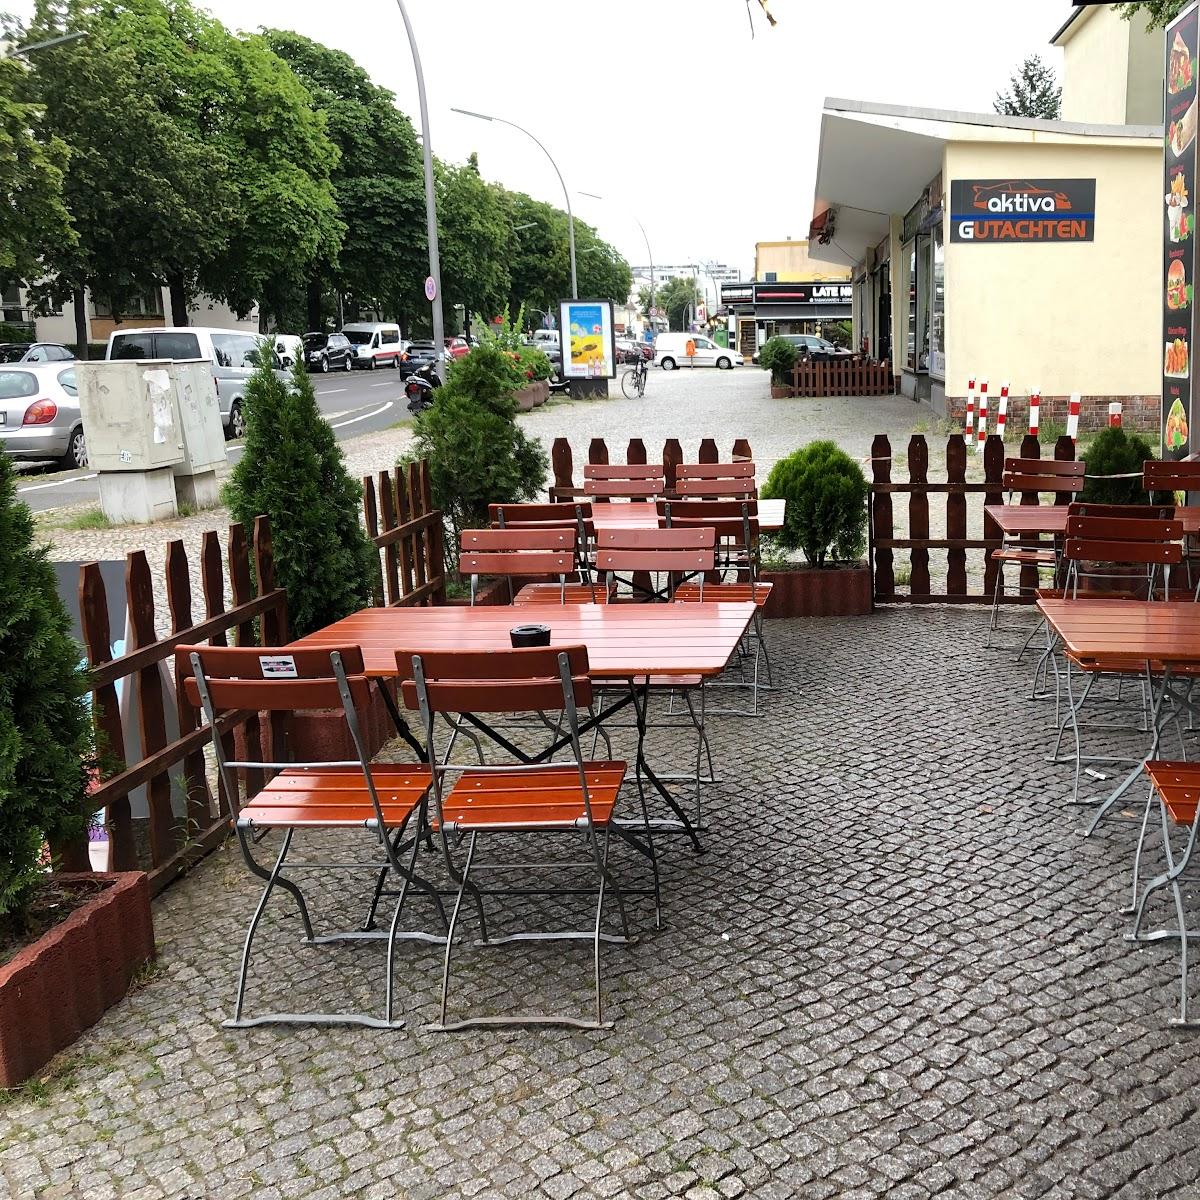 Restaurant "Deniz Bistro" in Berlin